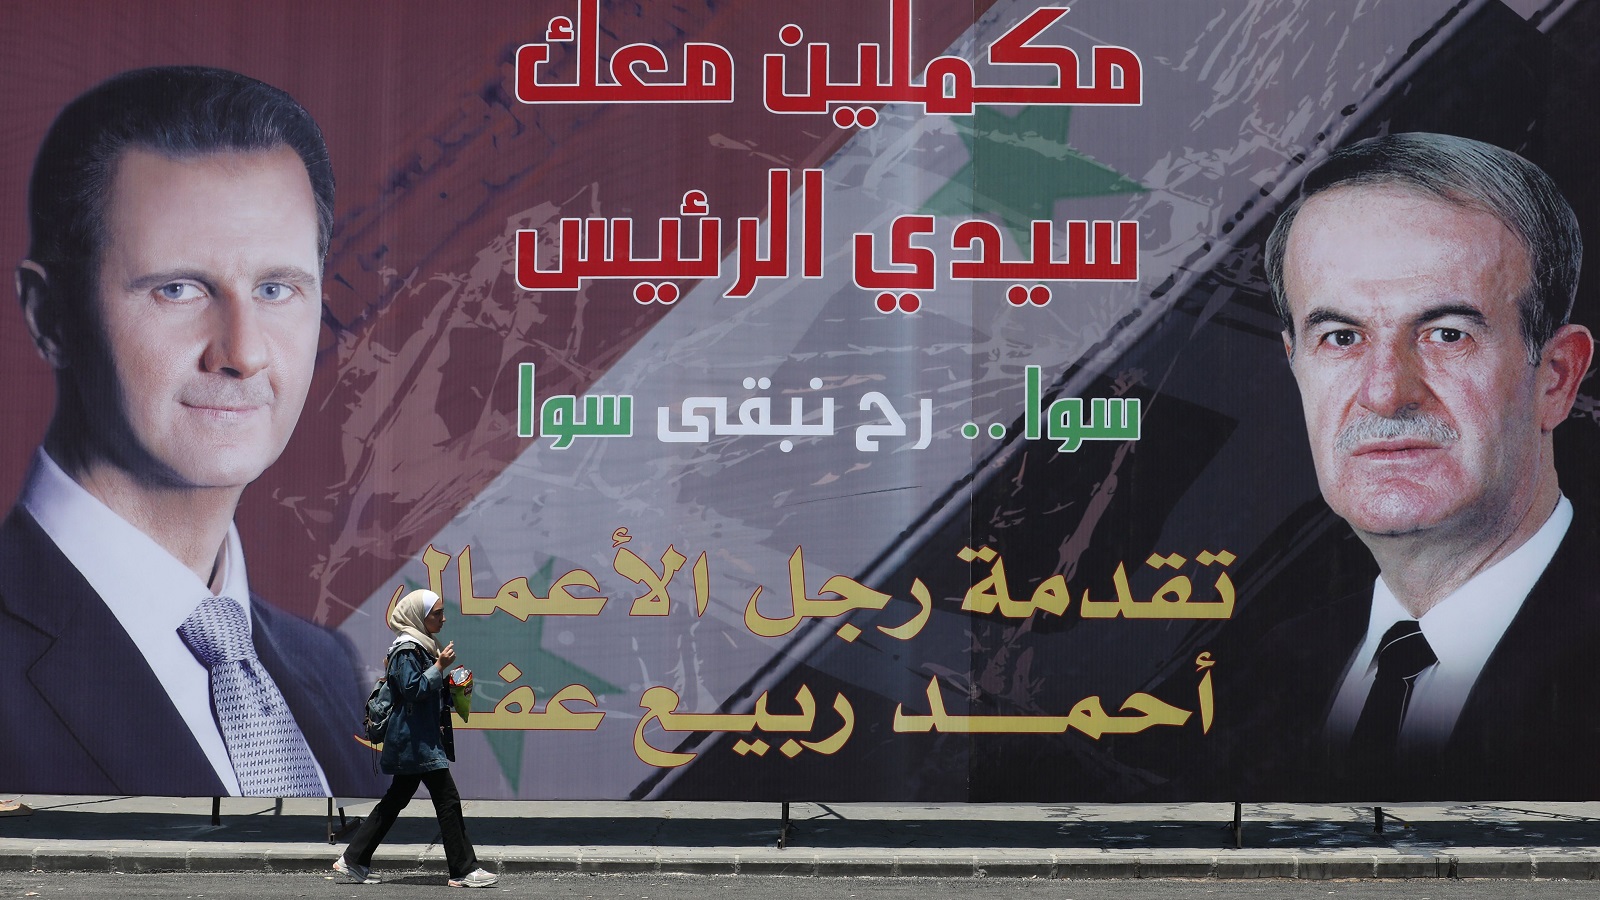 نصر الحريري ل"المدن":الاسد ينظم مهرجاناً لتمجيد الاستبداد